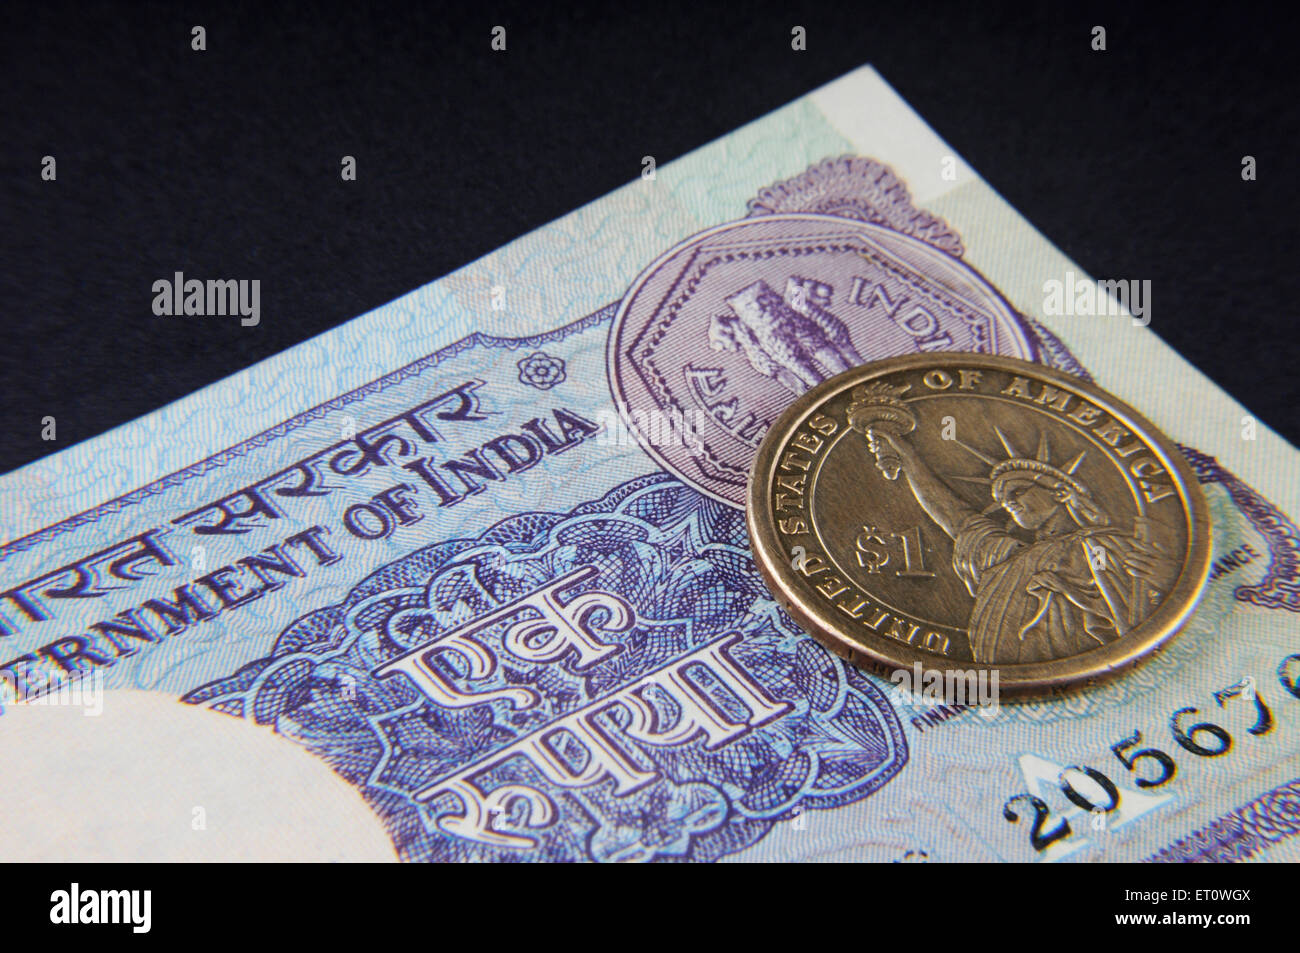 Concept de Roupie indienne remarque et Dollar américain Banque D'Images